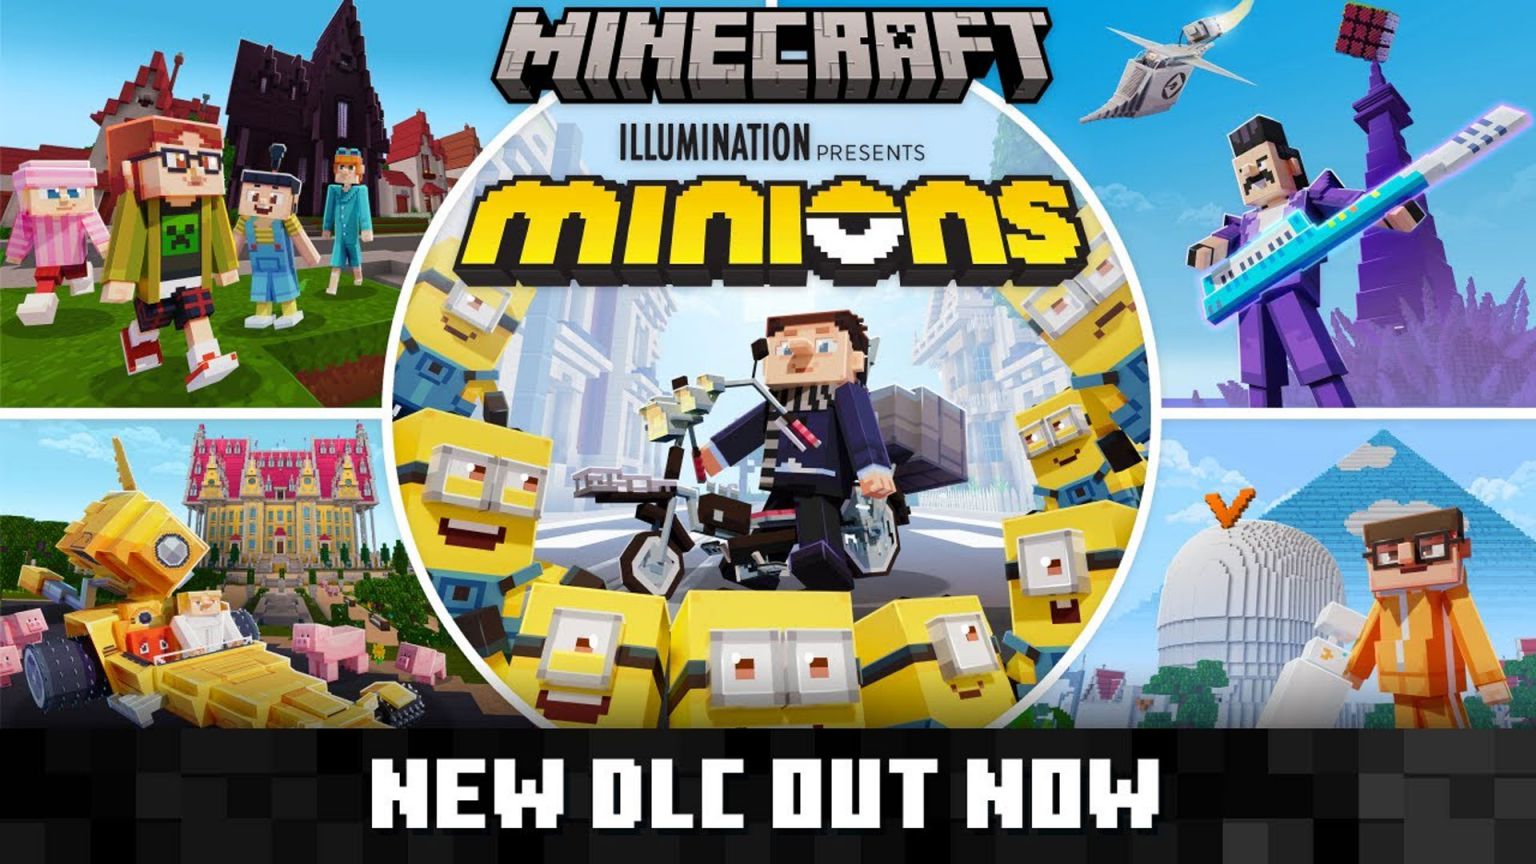 Mojang y Microsoft liberan el nuevo DLC de Los Minions en Minecraft que añade 29 skins de la franquicia y nuevas ubicaciones.